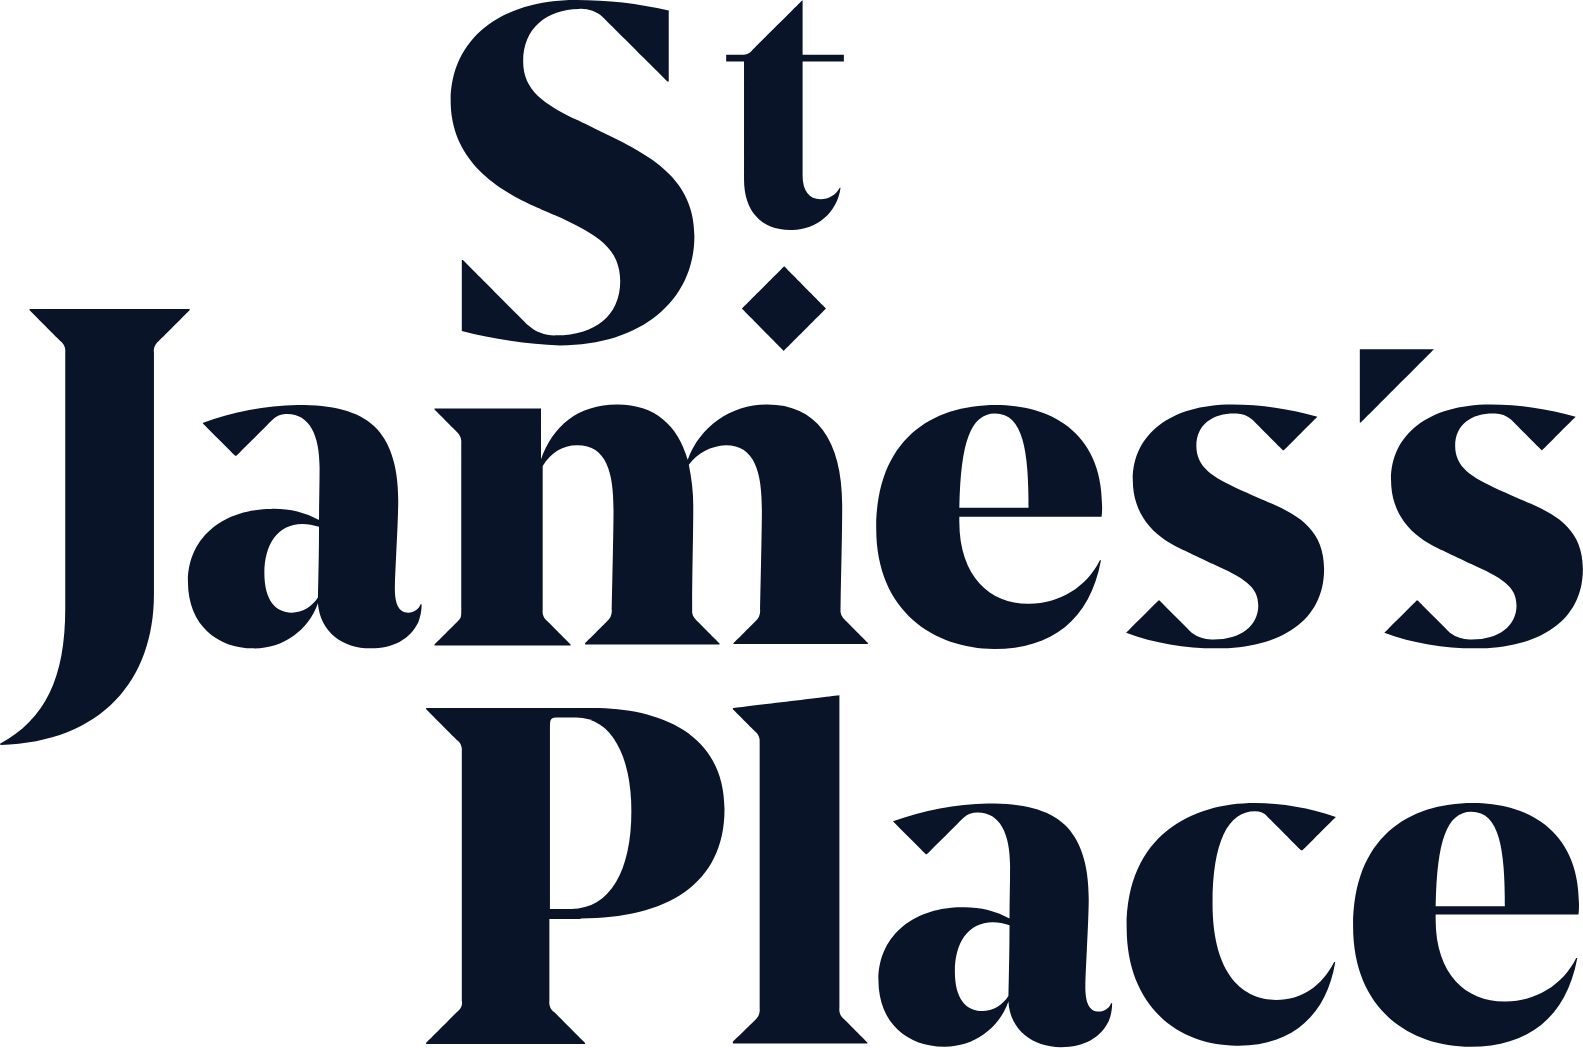 St. James's Place logo large (transparent PNG)